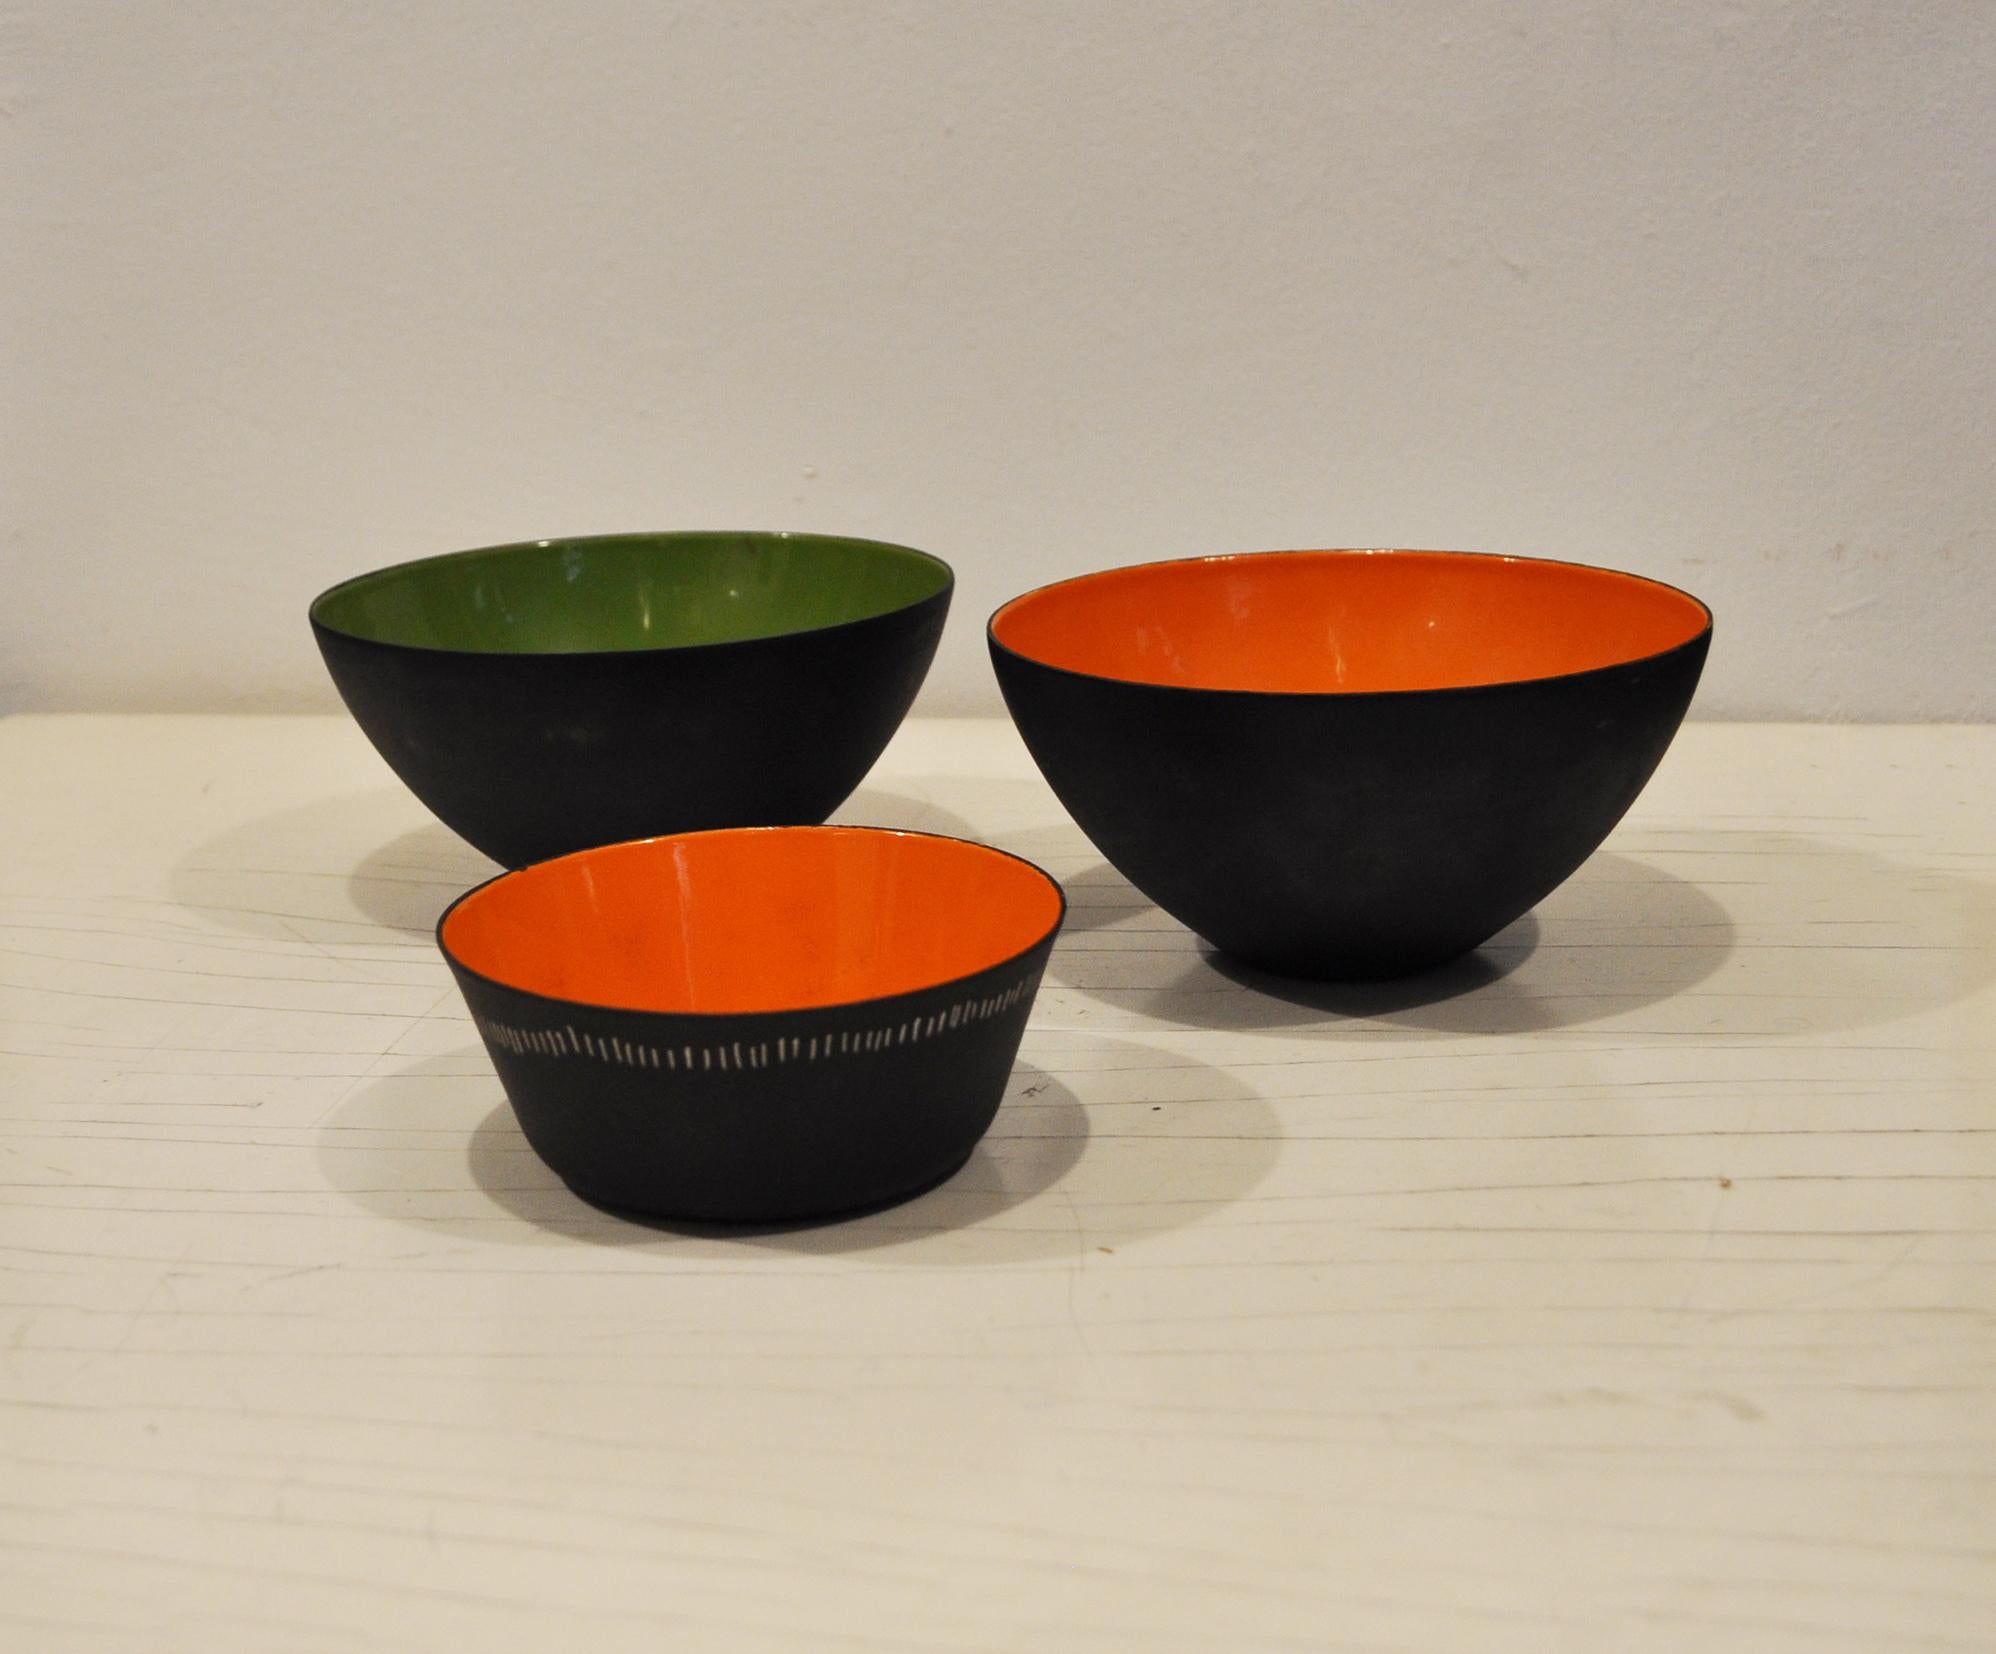 Set of bowls in enameled metal.
Krenit model
Designer Herbert Krenchel
Producer Torben Orskov
Year 1953
Measure: cm D 16 x H 8
cm D 12 x H 5.